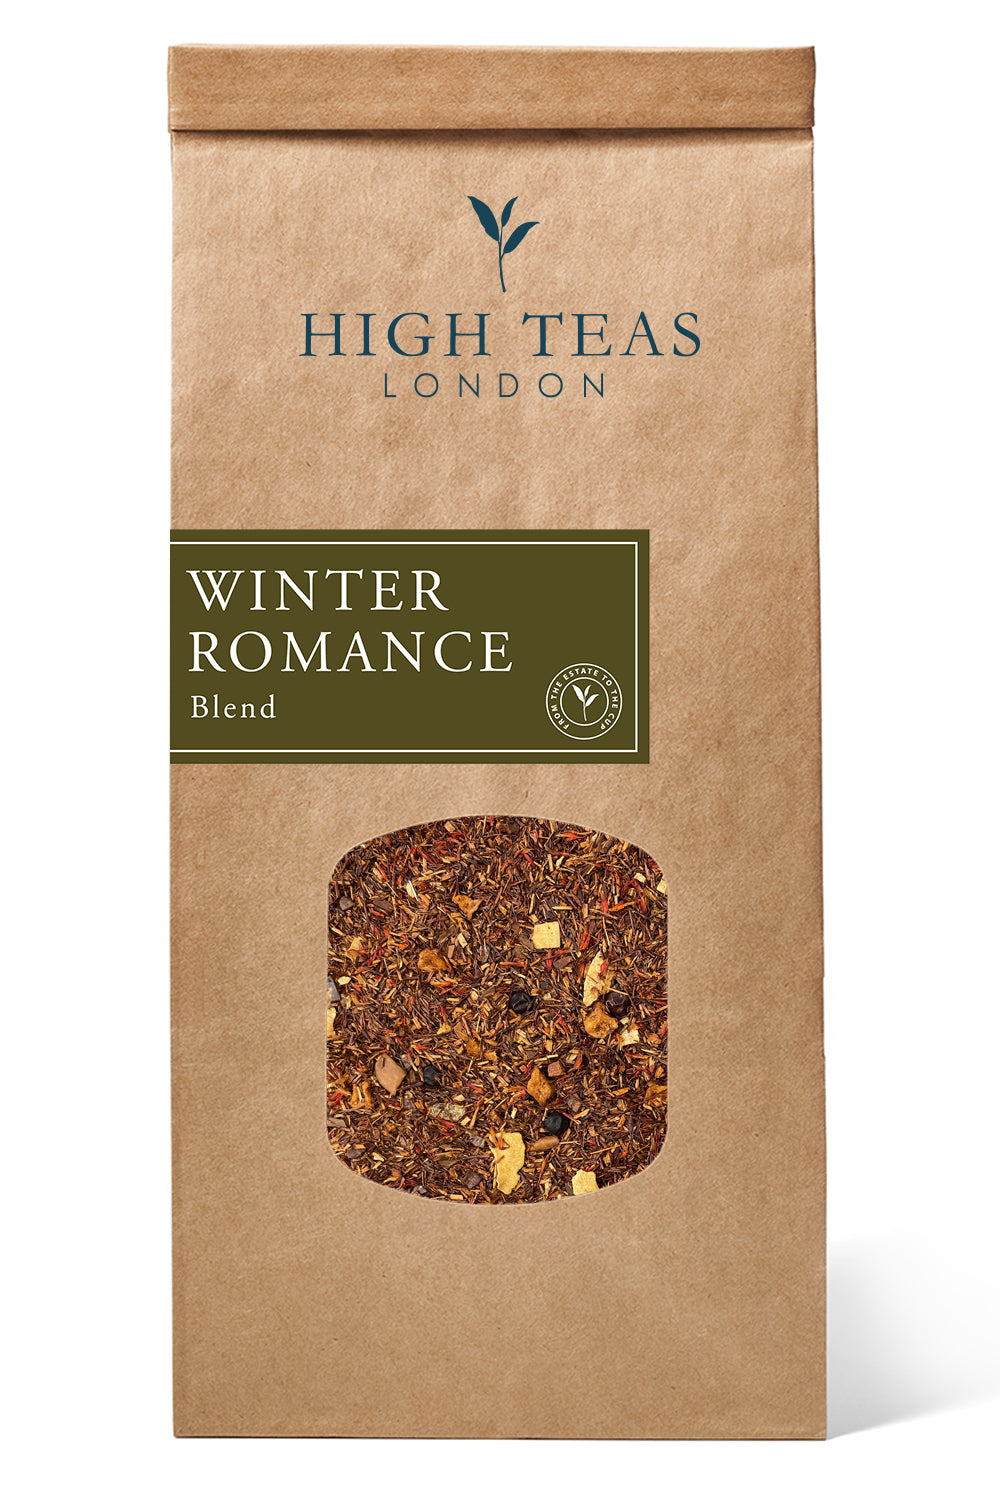 Winter Romance-250g-Loose Leaf Tea-High Teas